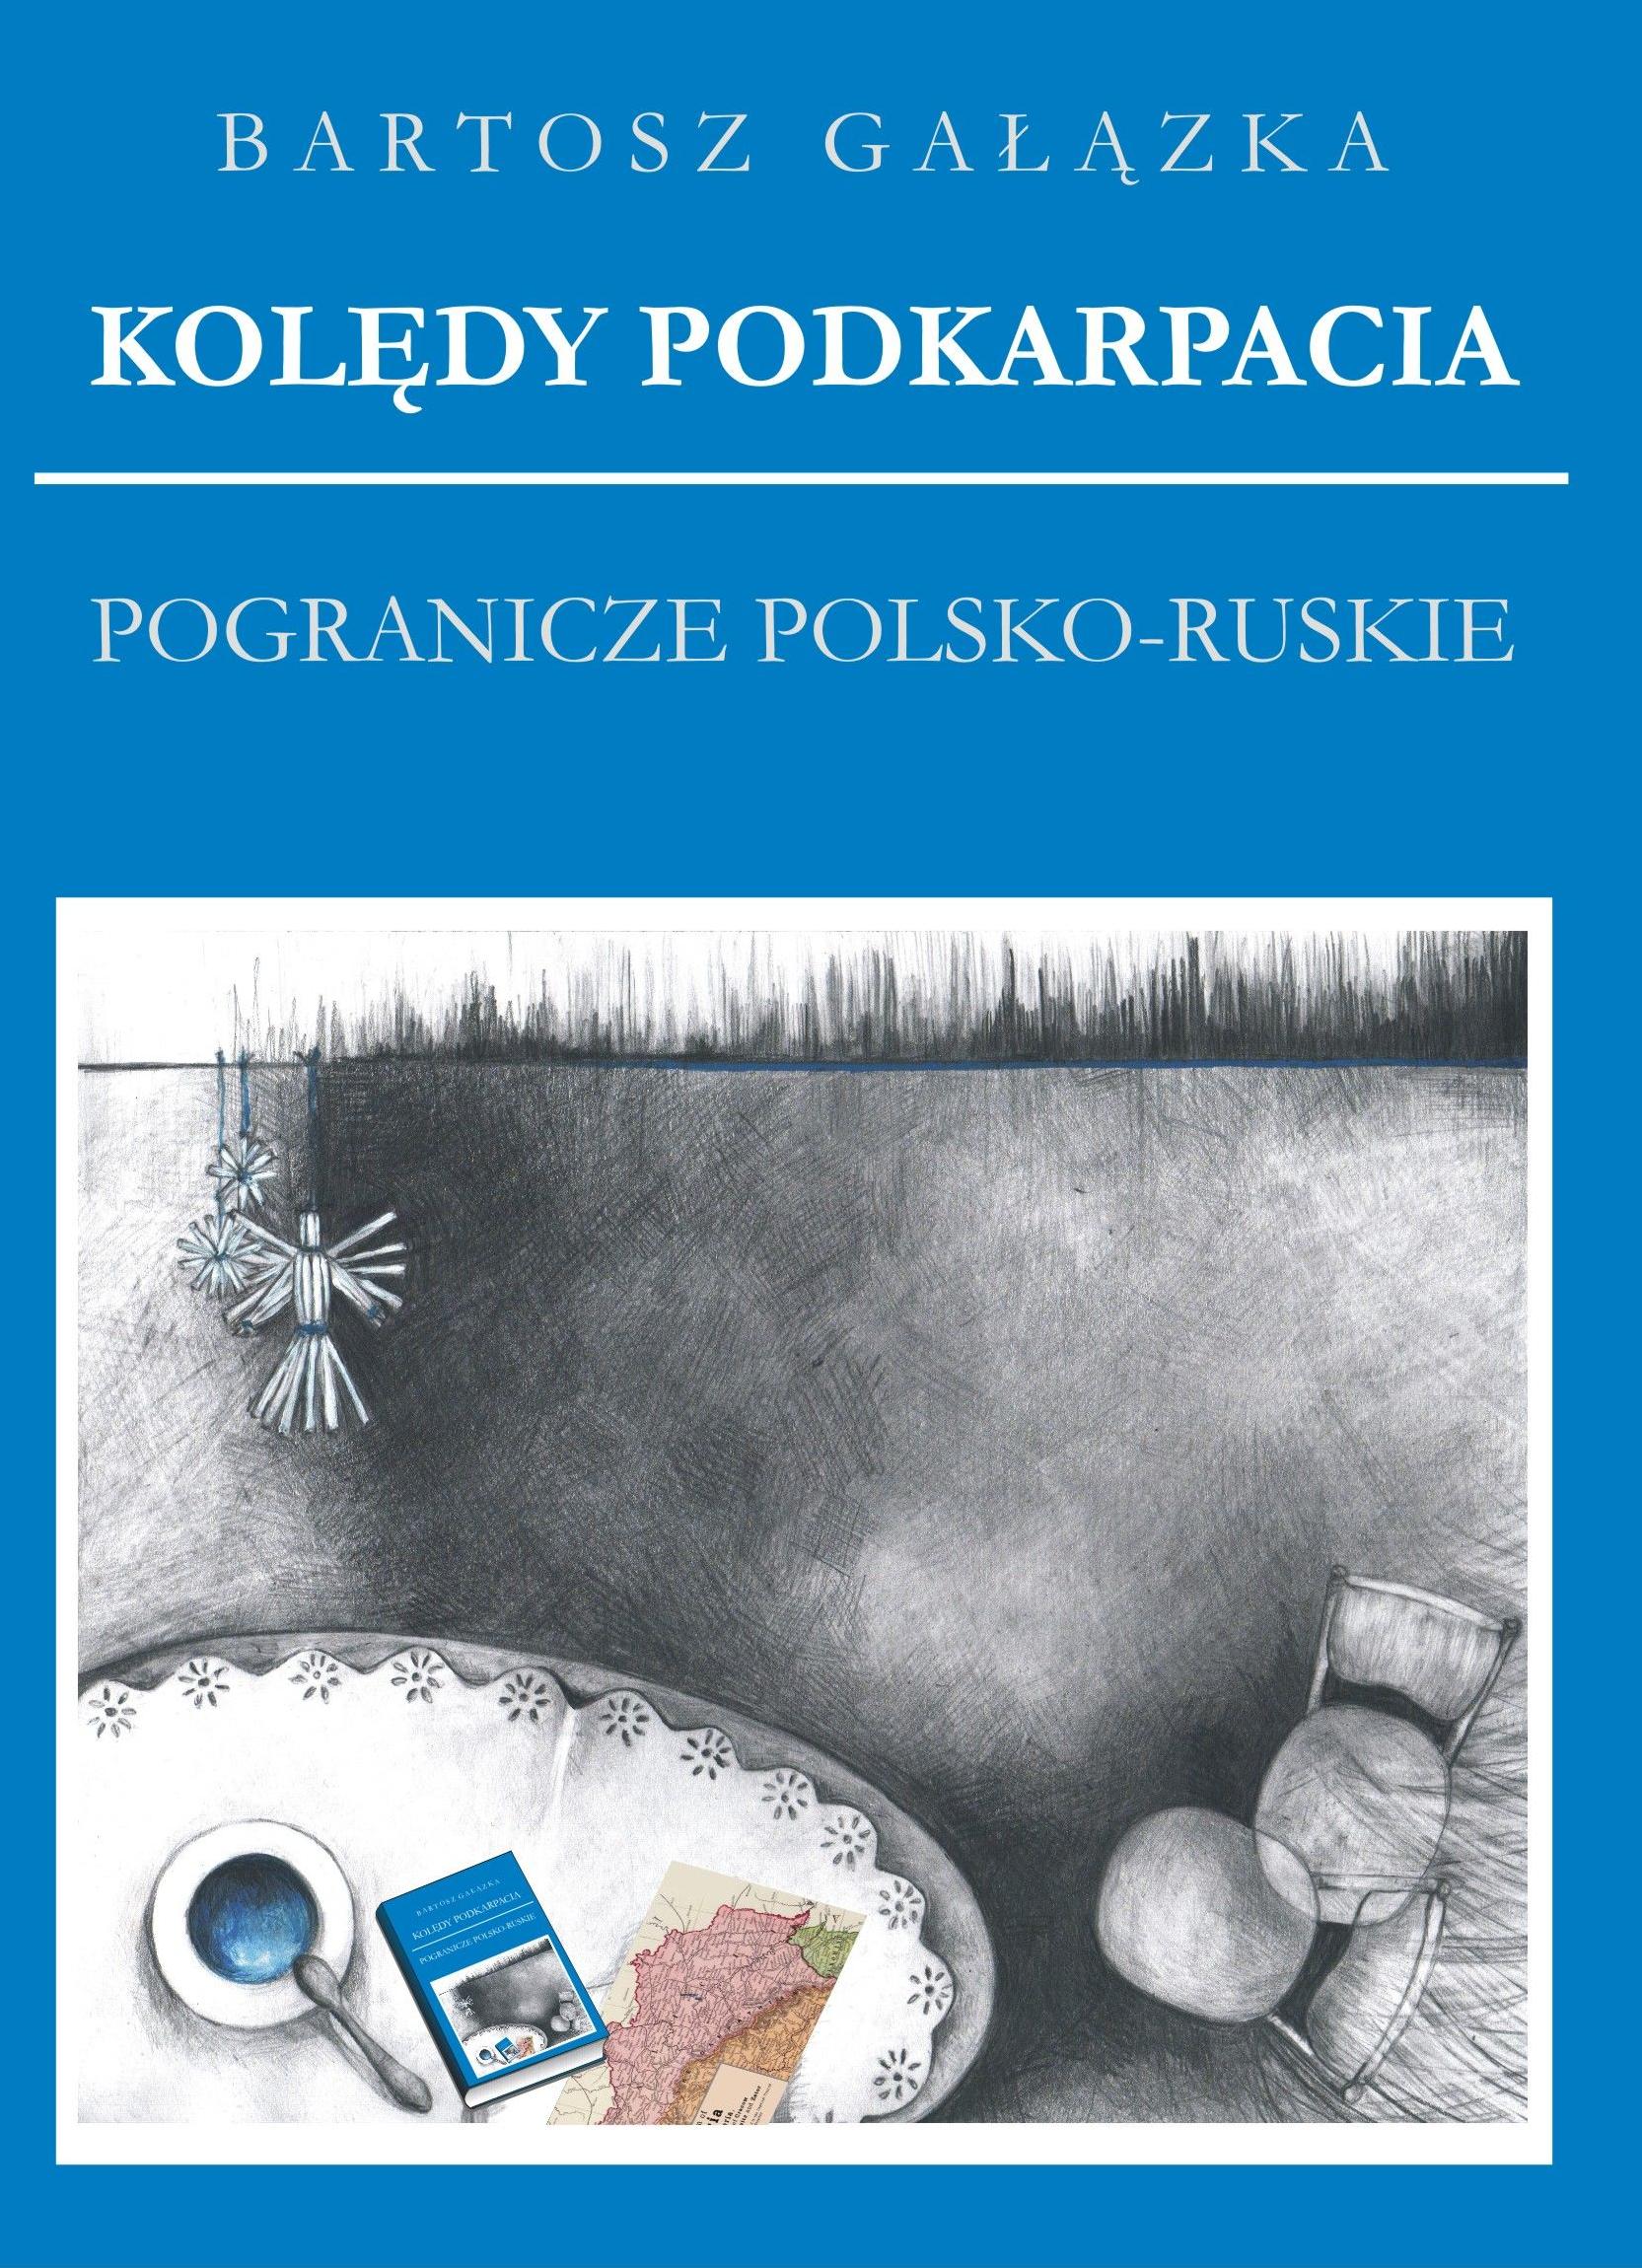 Kolędy Podkarpacia. T3: Pogranicze polsko-ruskie